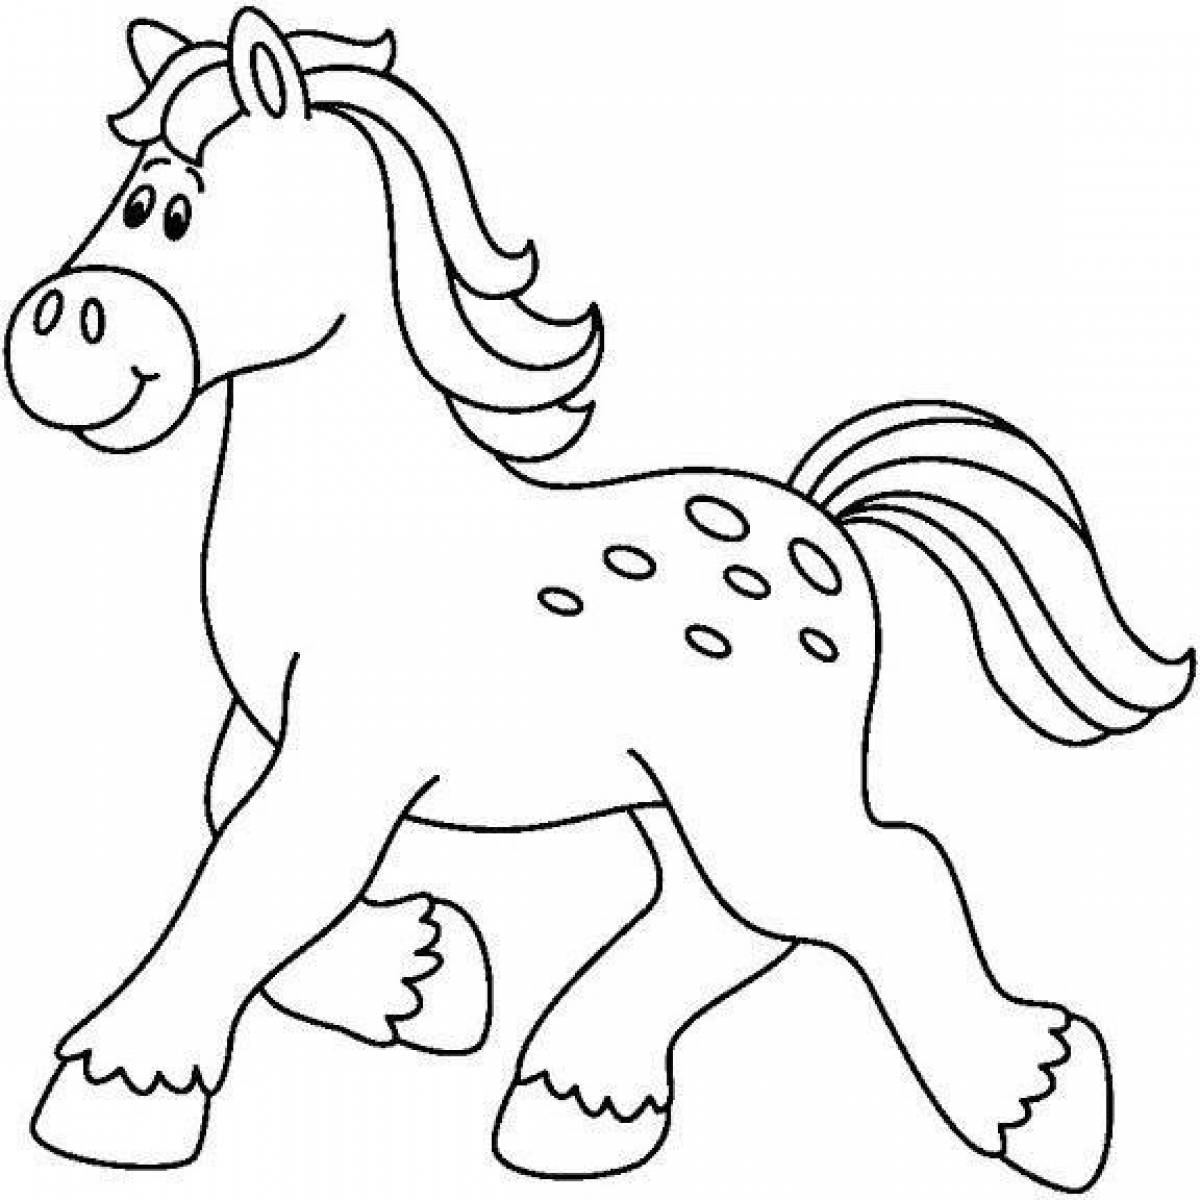 Лошадка трафарет. Трафарет лошадки для детей. Лошадка раскраска для детей. Лошадь раскраска для детей. Лошадь трафарет для детей.